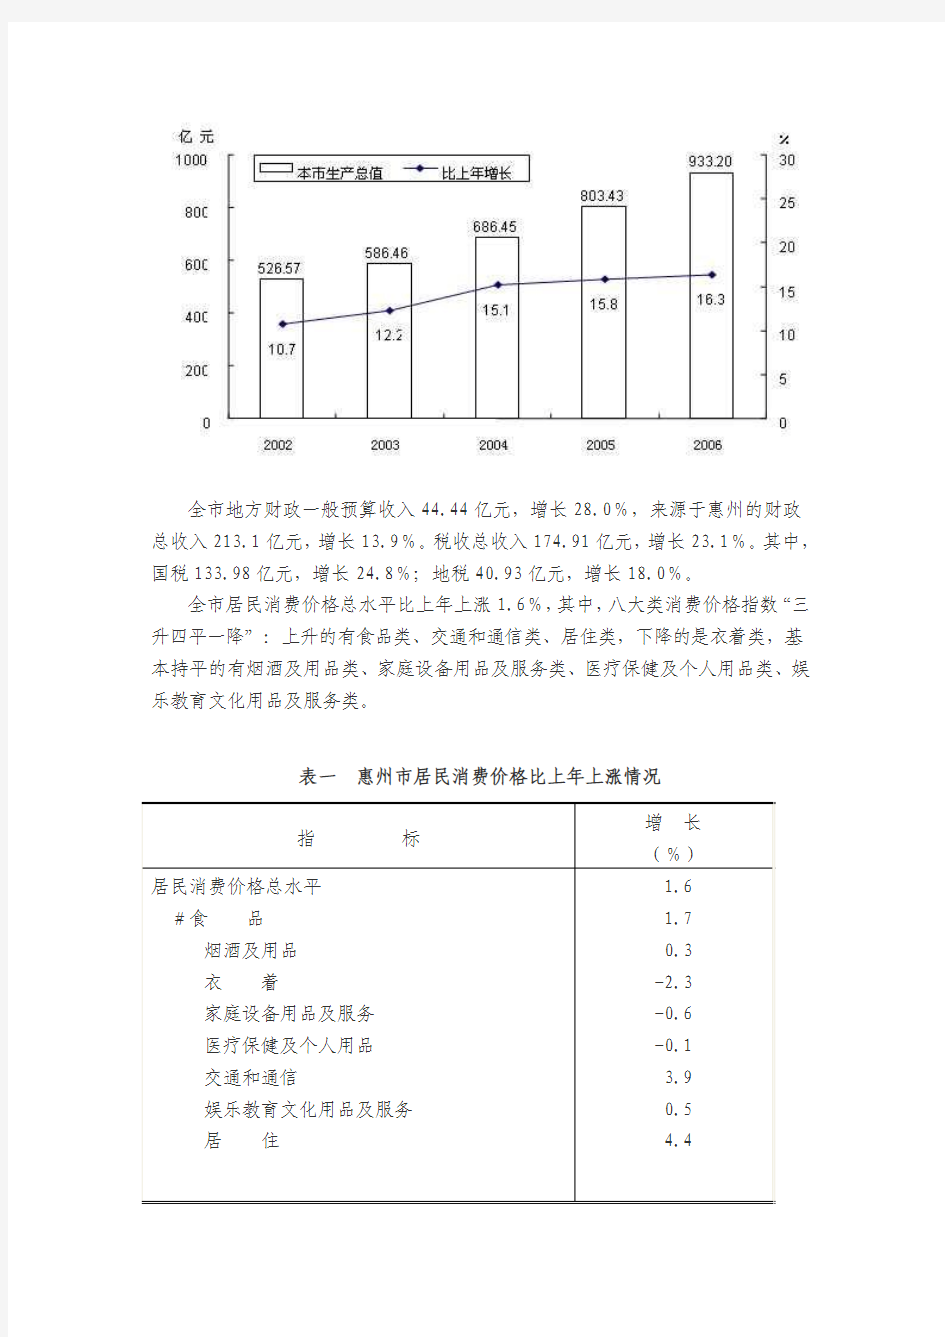 惠州市统计局关于2006年国民经济和社会发展的统计公报